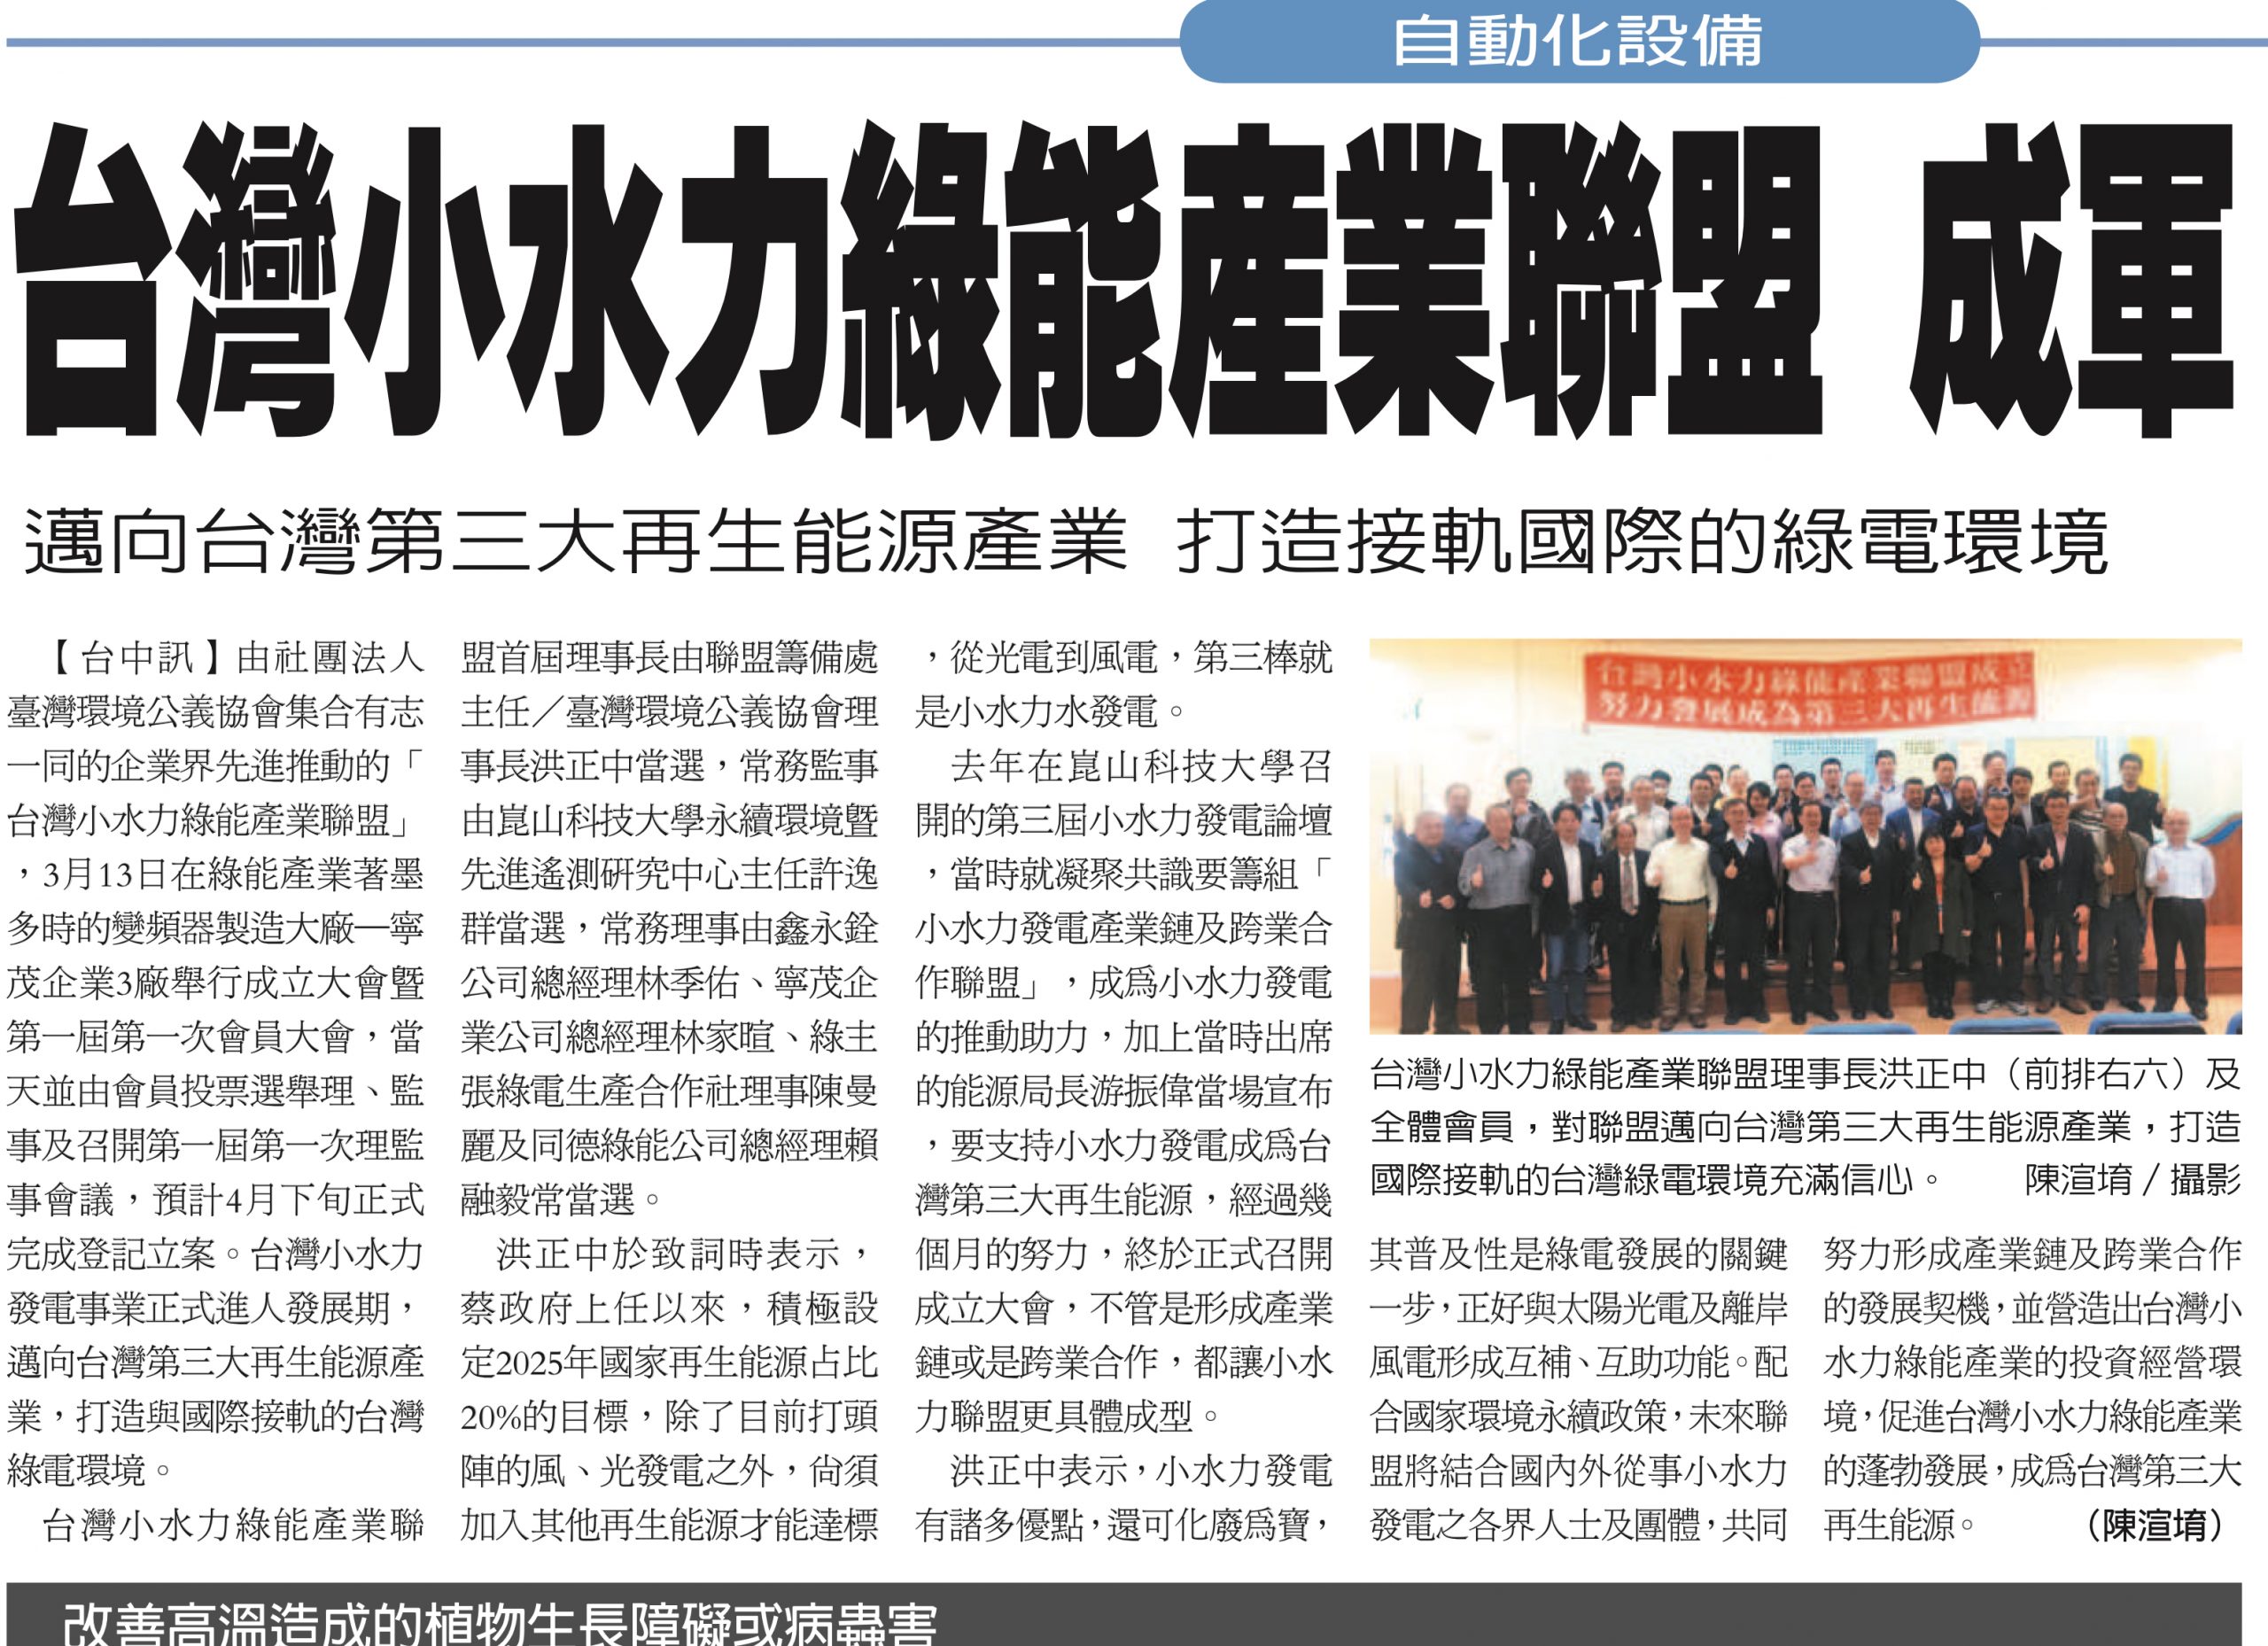 2021年3月 台灣小水力綠能產業聯盟正式成立